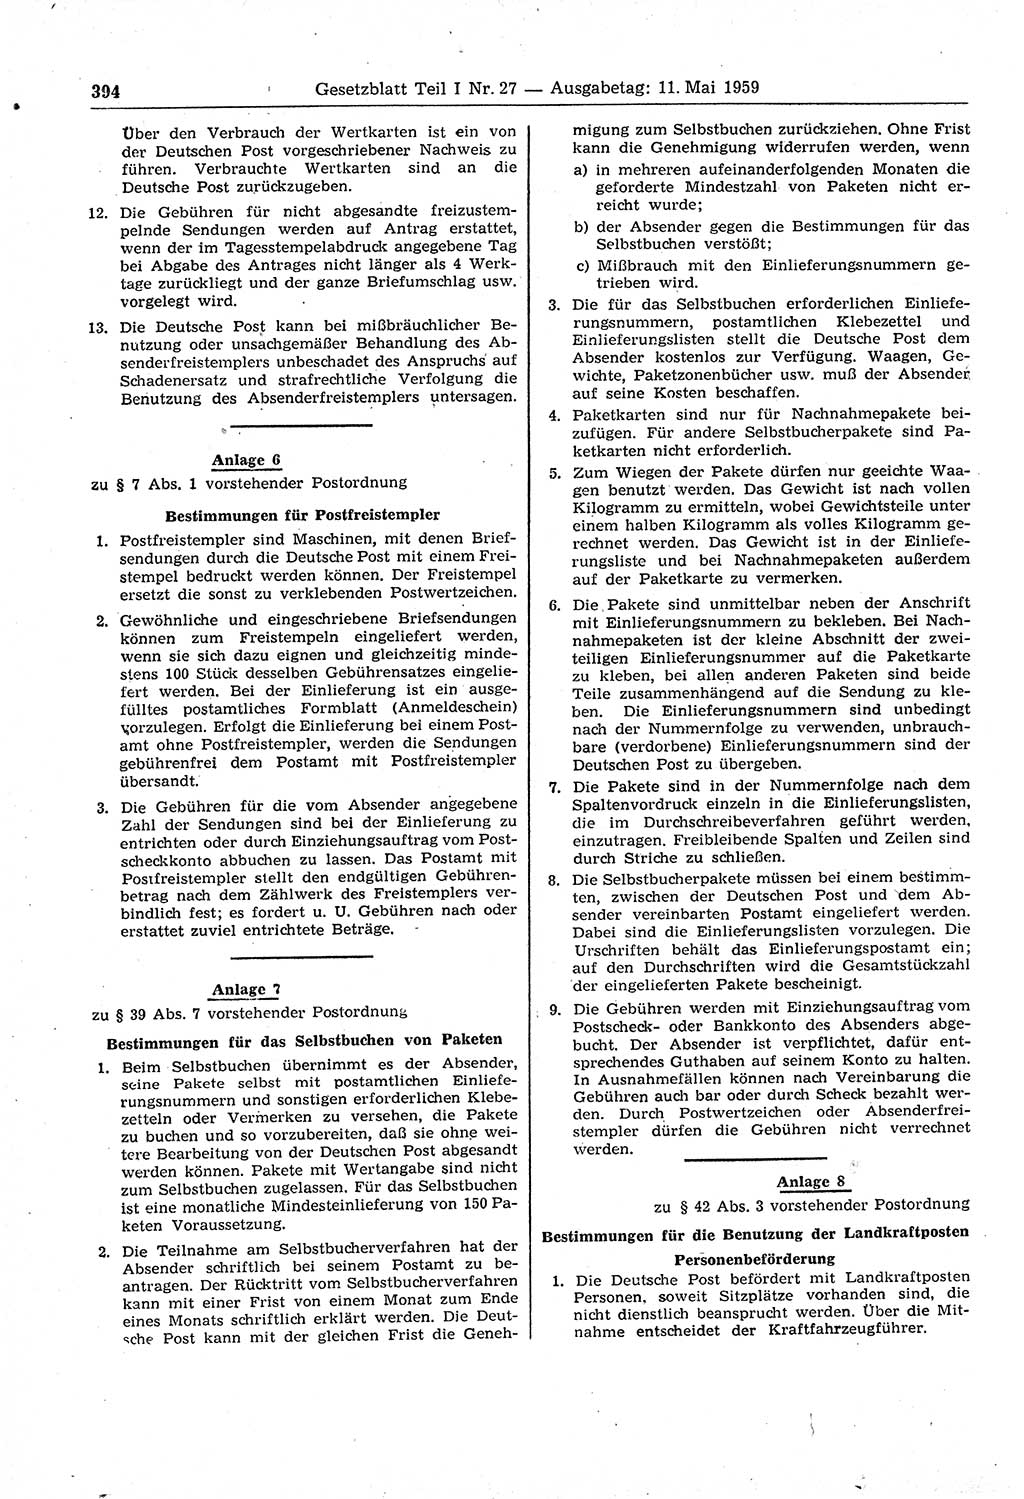 Gesetzblatt (GBl.) der Deutschen Demokratischen Republik (DDR) Teil Ⅰ 1959, Seite 394 (GBl. DDR Ⅰ 1959, S. 394)